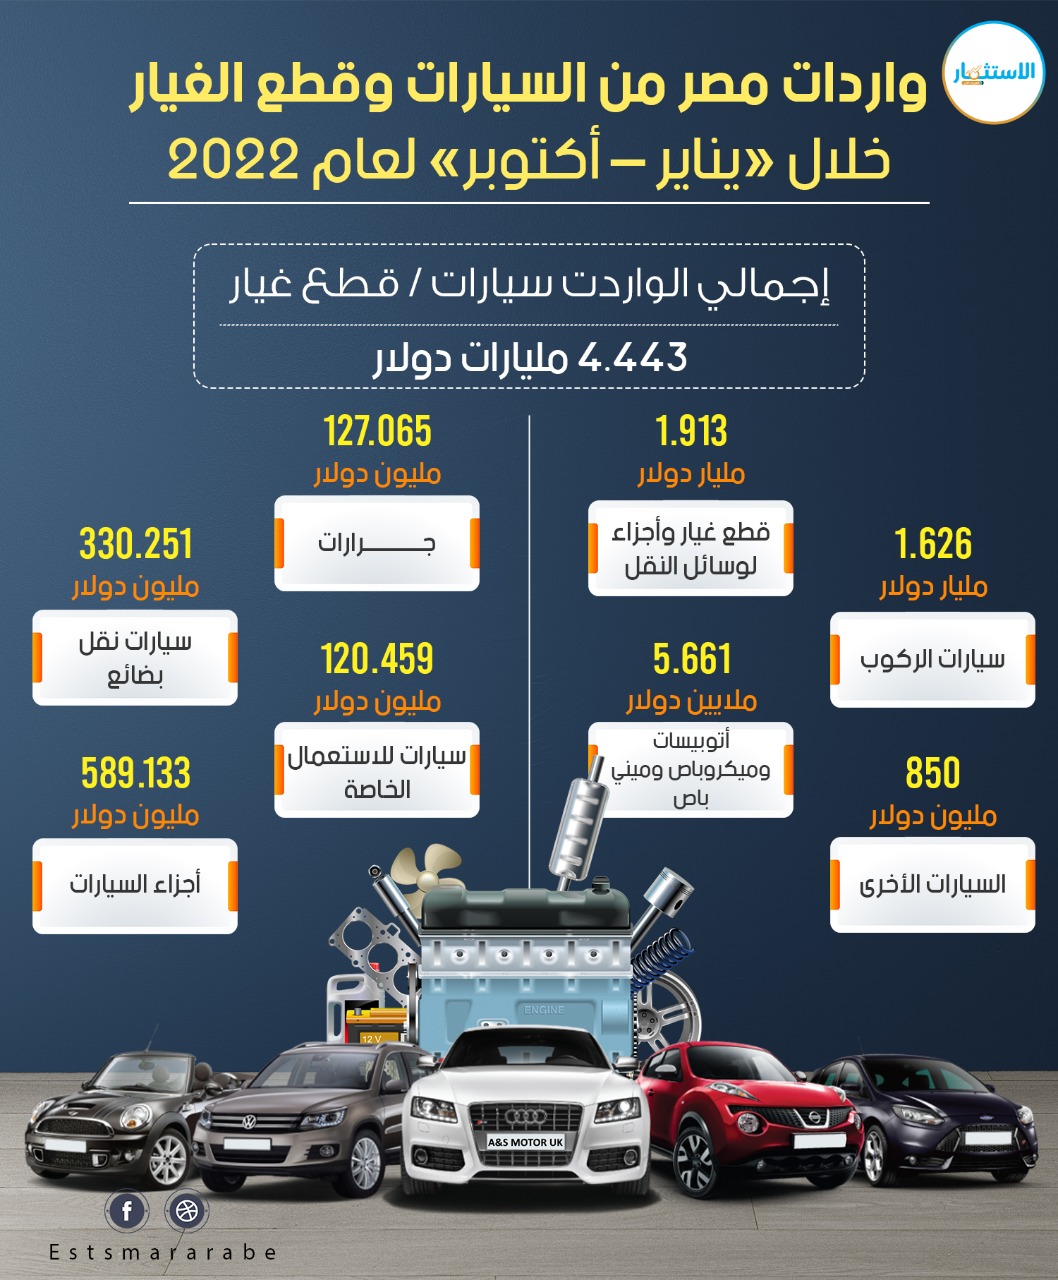 إنفوجرافيك|| واردات مصر من السيارات وقطع الغيار خلال «يناير-أكتوبر» لعام 2022